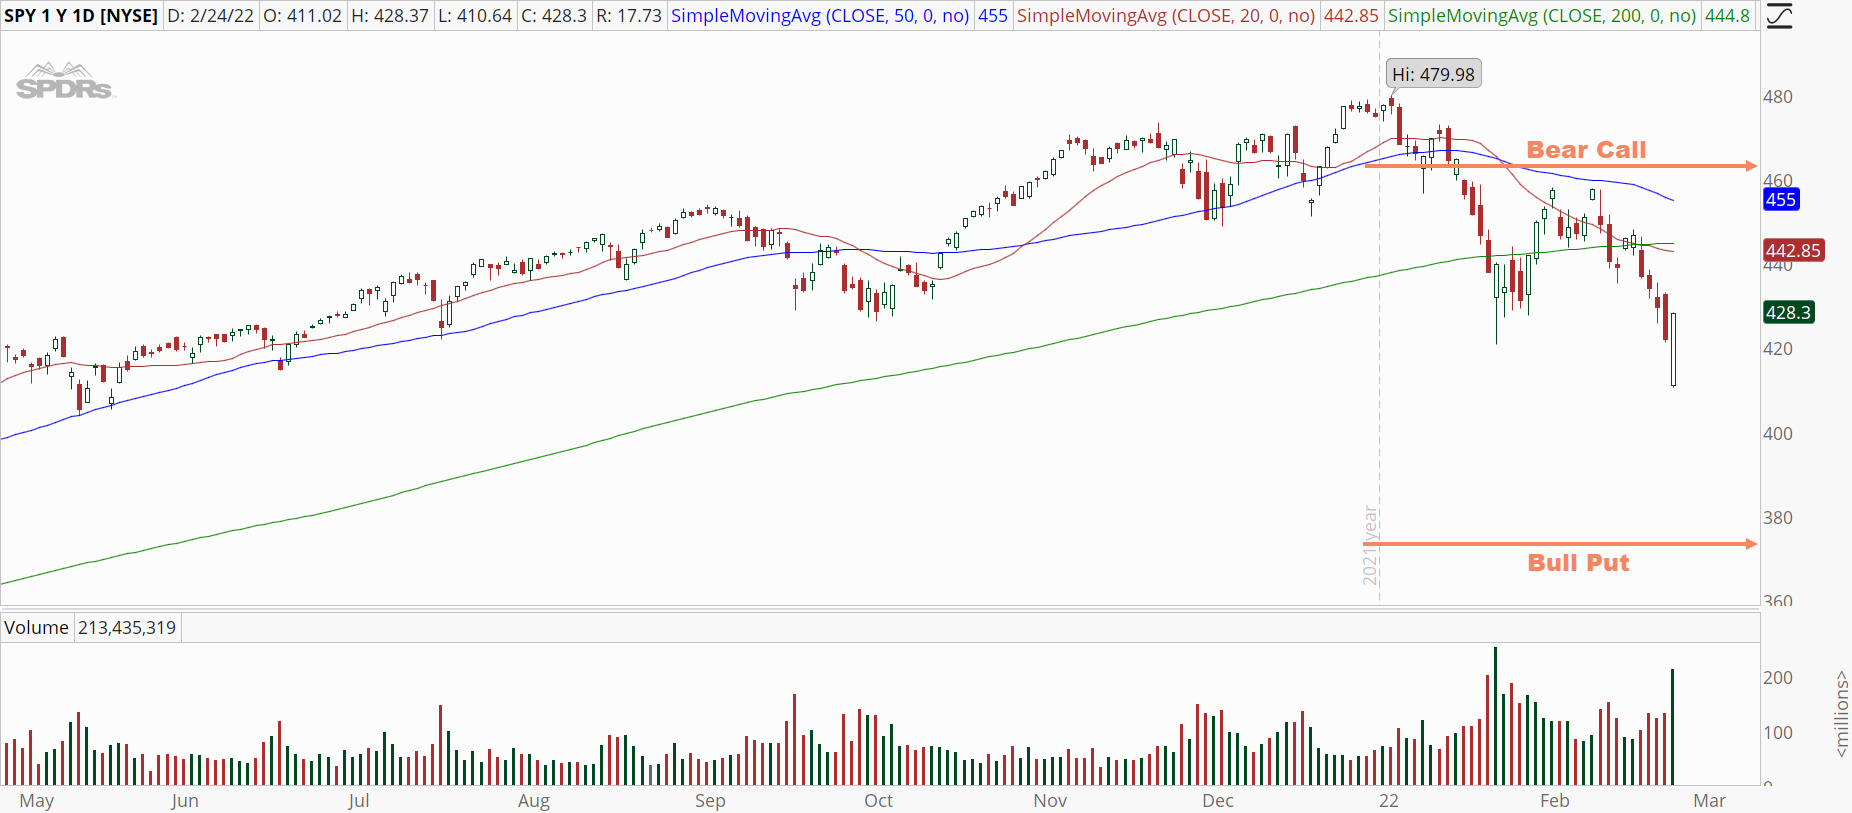 S&P 500 ETF (SPY) stock chart with iron condor range 